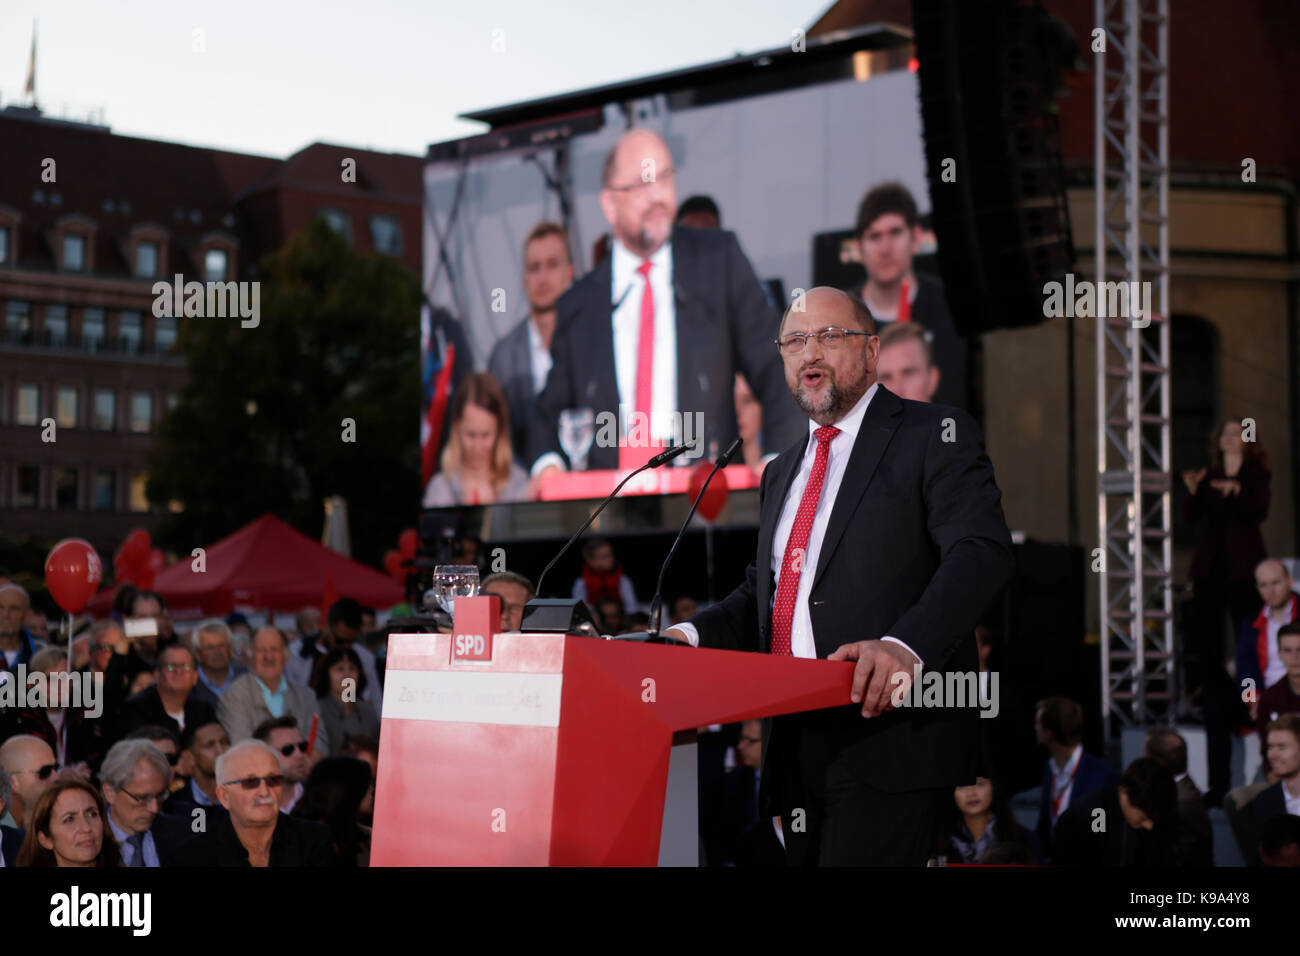 Berlín, Alemania. 22 Sep, 2017. Martin Schulz aborda el rallye. El candidato para el Rectorado alemán del SPD (Partido Socialdemócrata de Alemania) fue el orador principal en una gran manifestación en el centro de Berlín, dos días antes de las elecciones generales alemanas. Crédito: Sopa de imágenes limitado/Alamy Live News Foto de stock